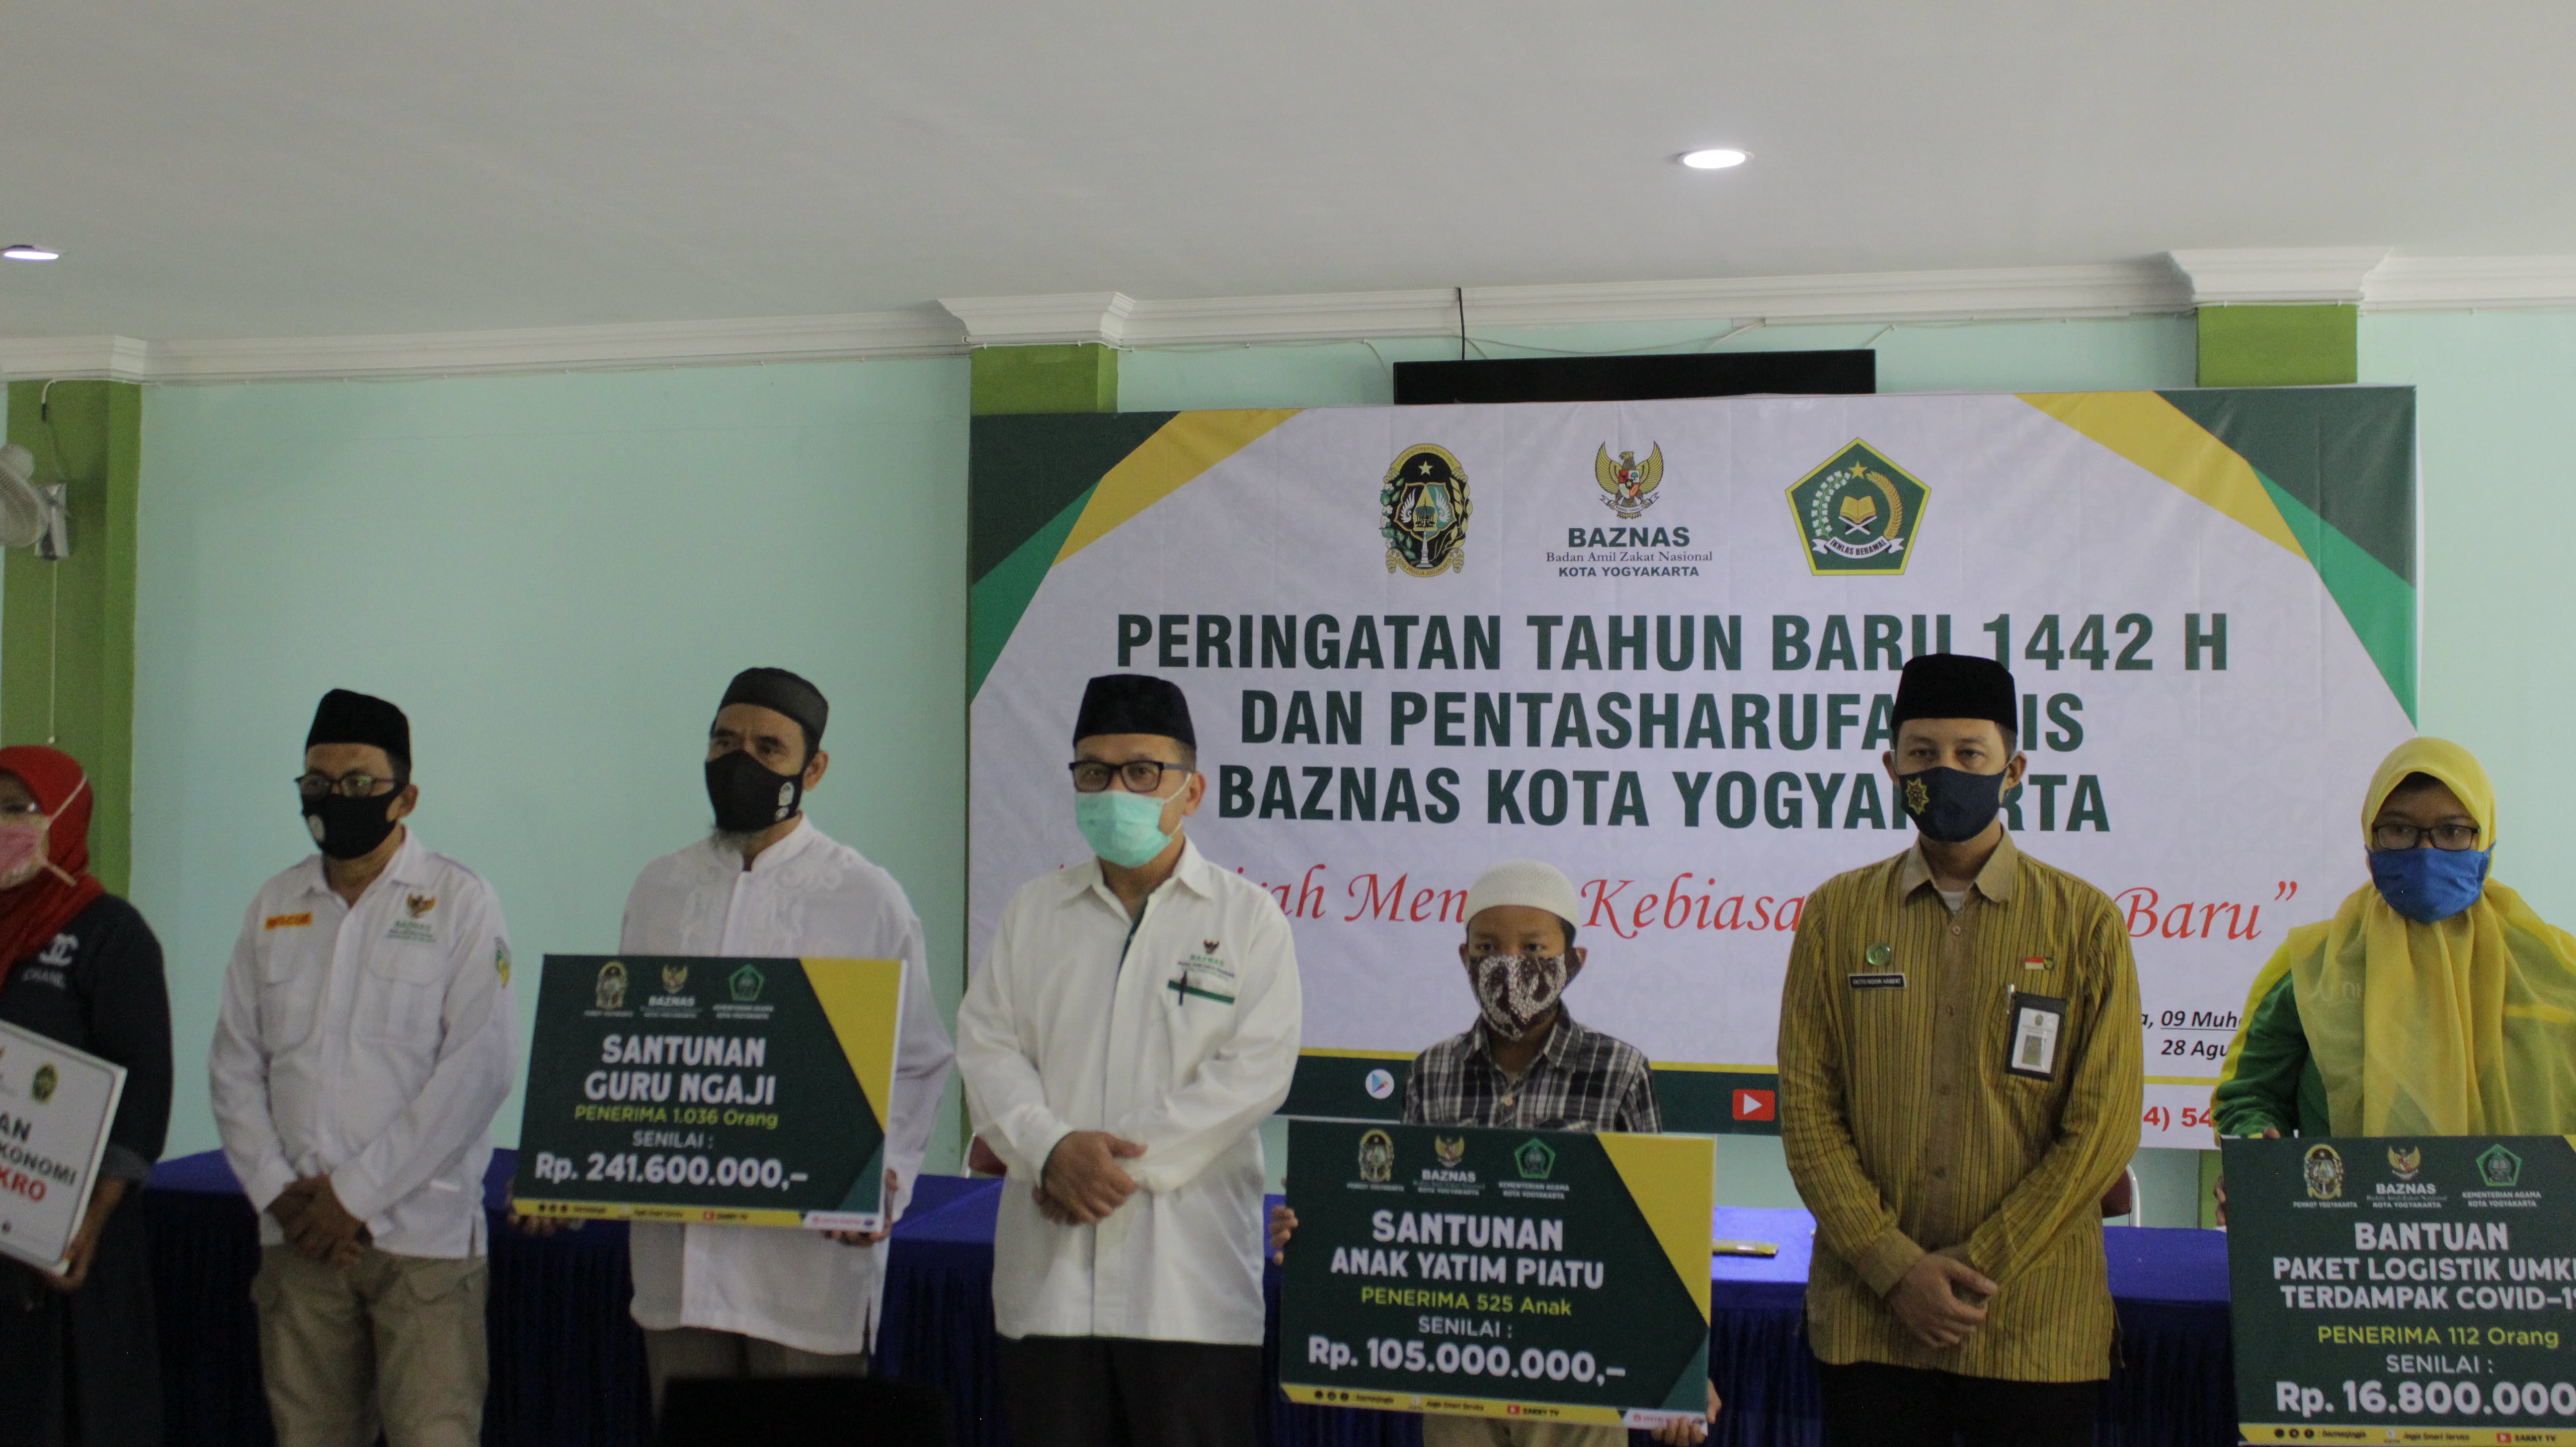 Baznas Kota Yogyakarta Peringati Tahun Baru Hijriyah Baznas Kota Yogyakarta Salurkan Bantuan Zis Sebesar 600 Juta